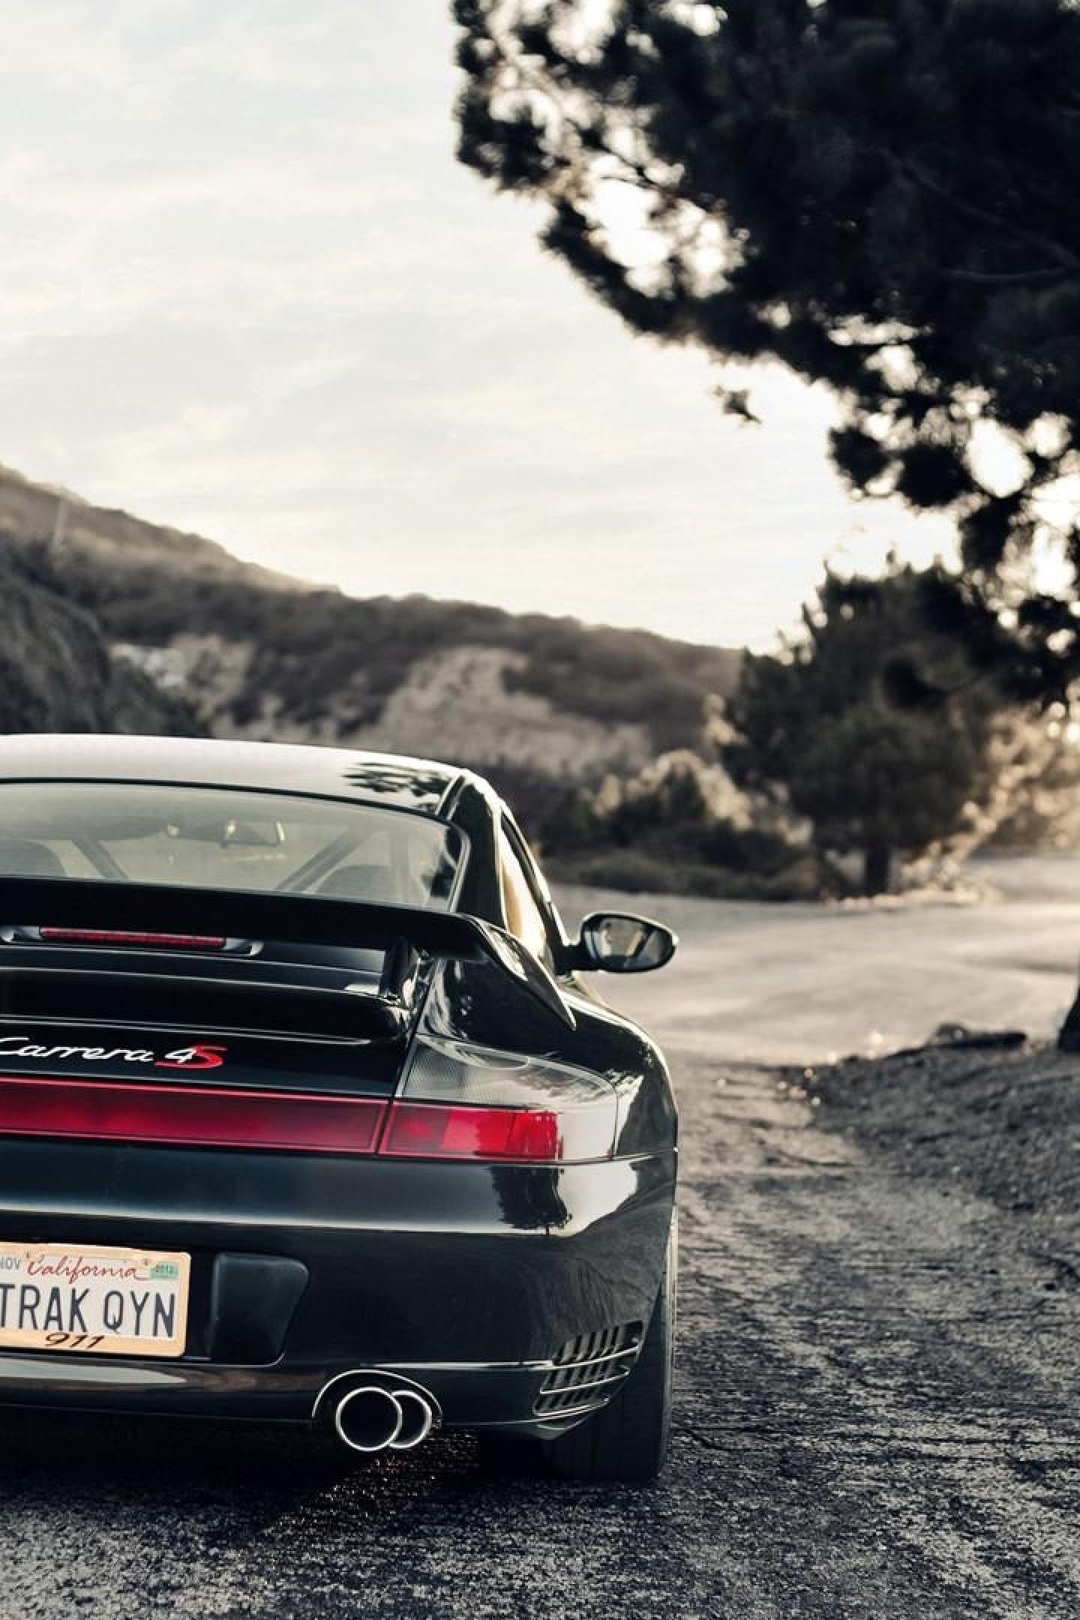 Картинка: Porsche, Сarrera, дорога, обочина, путь